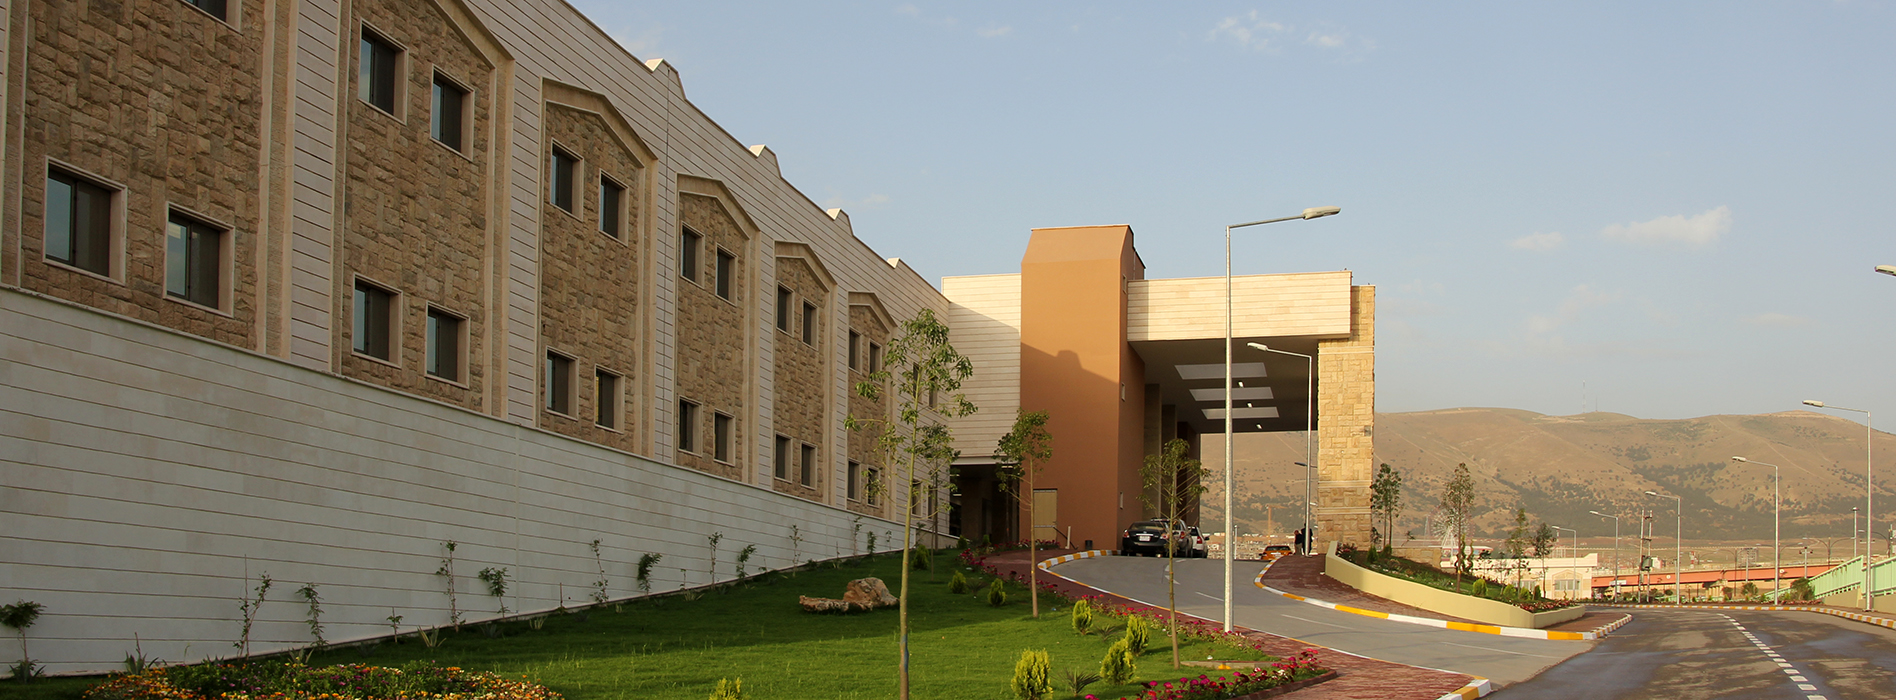 Shar Hospital